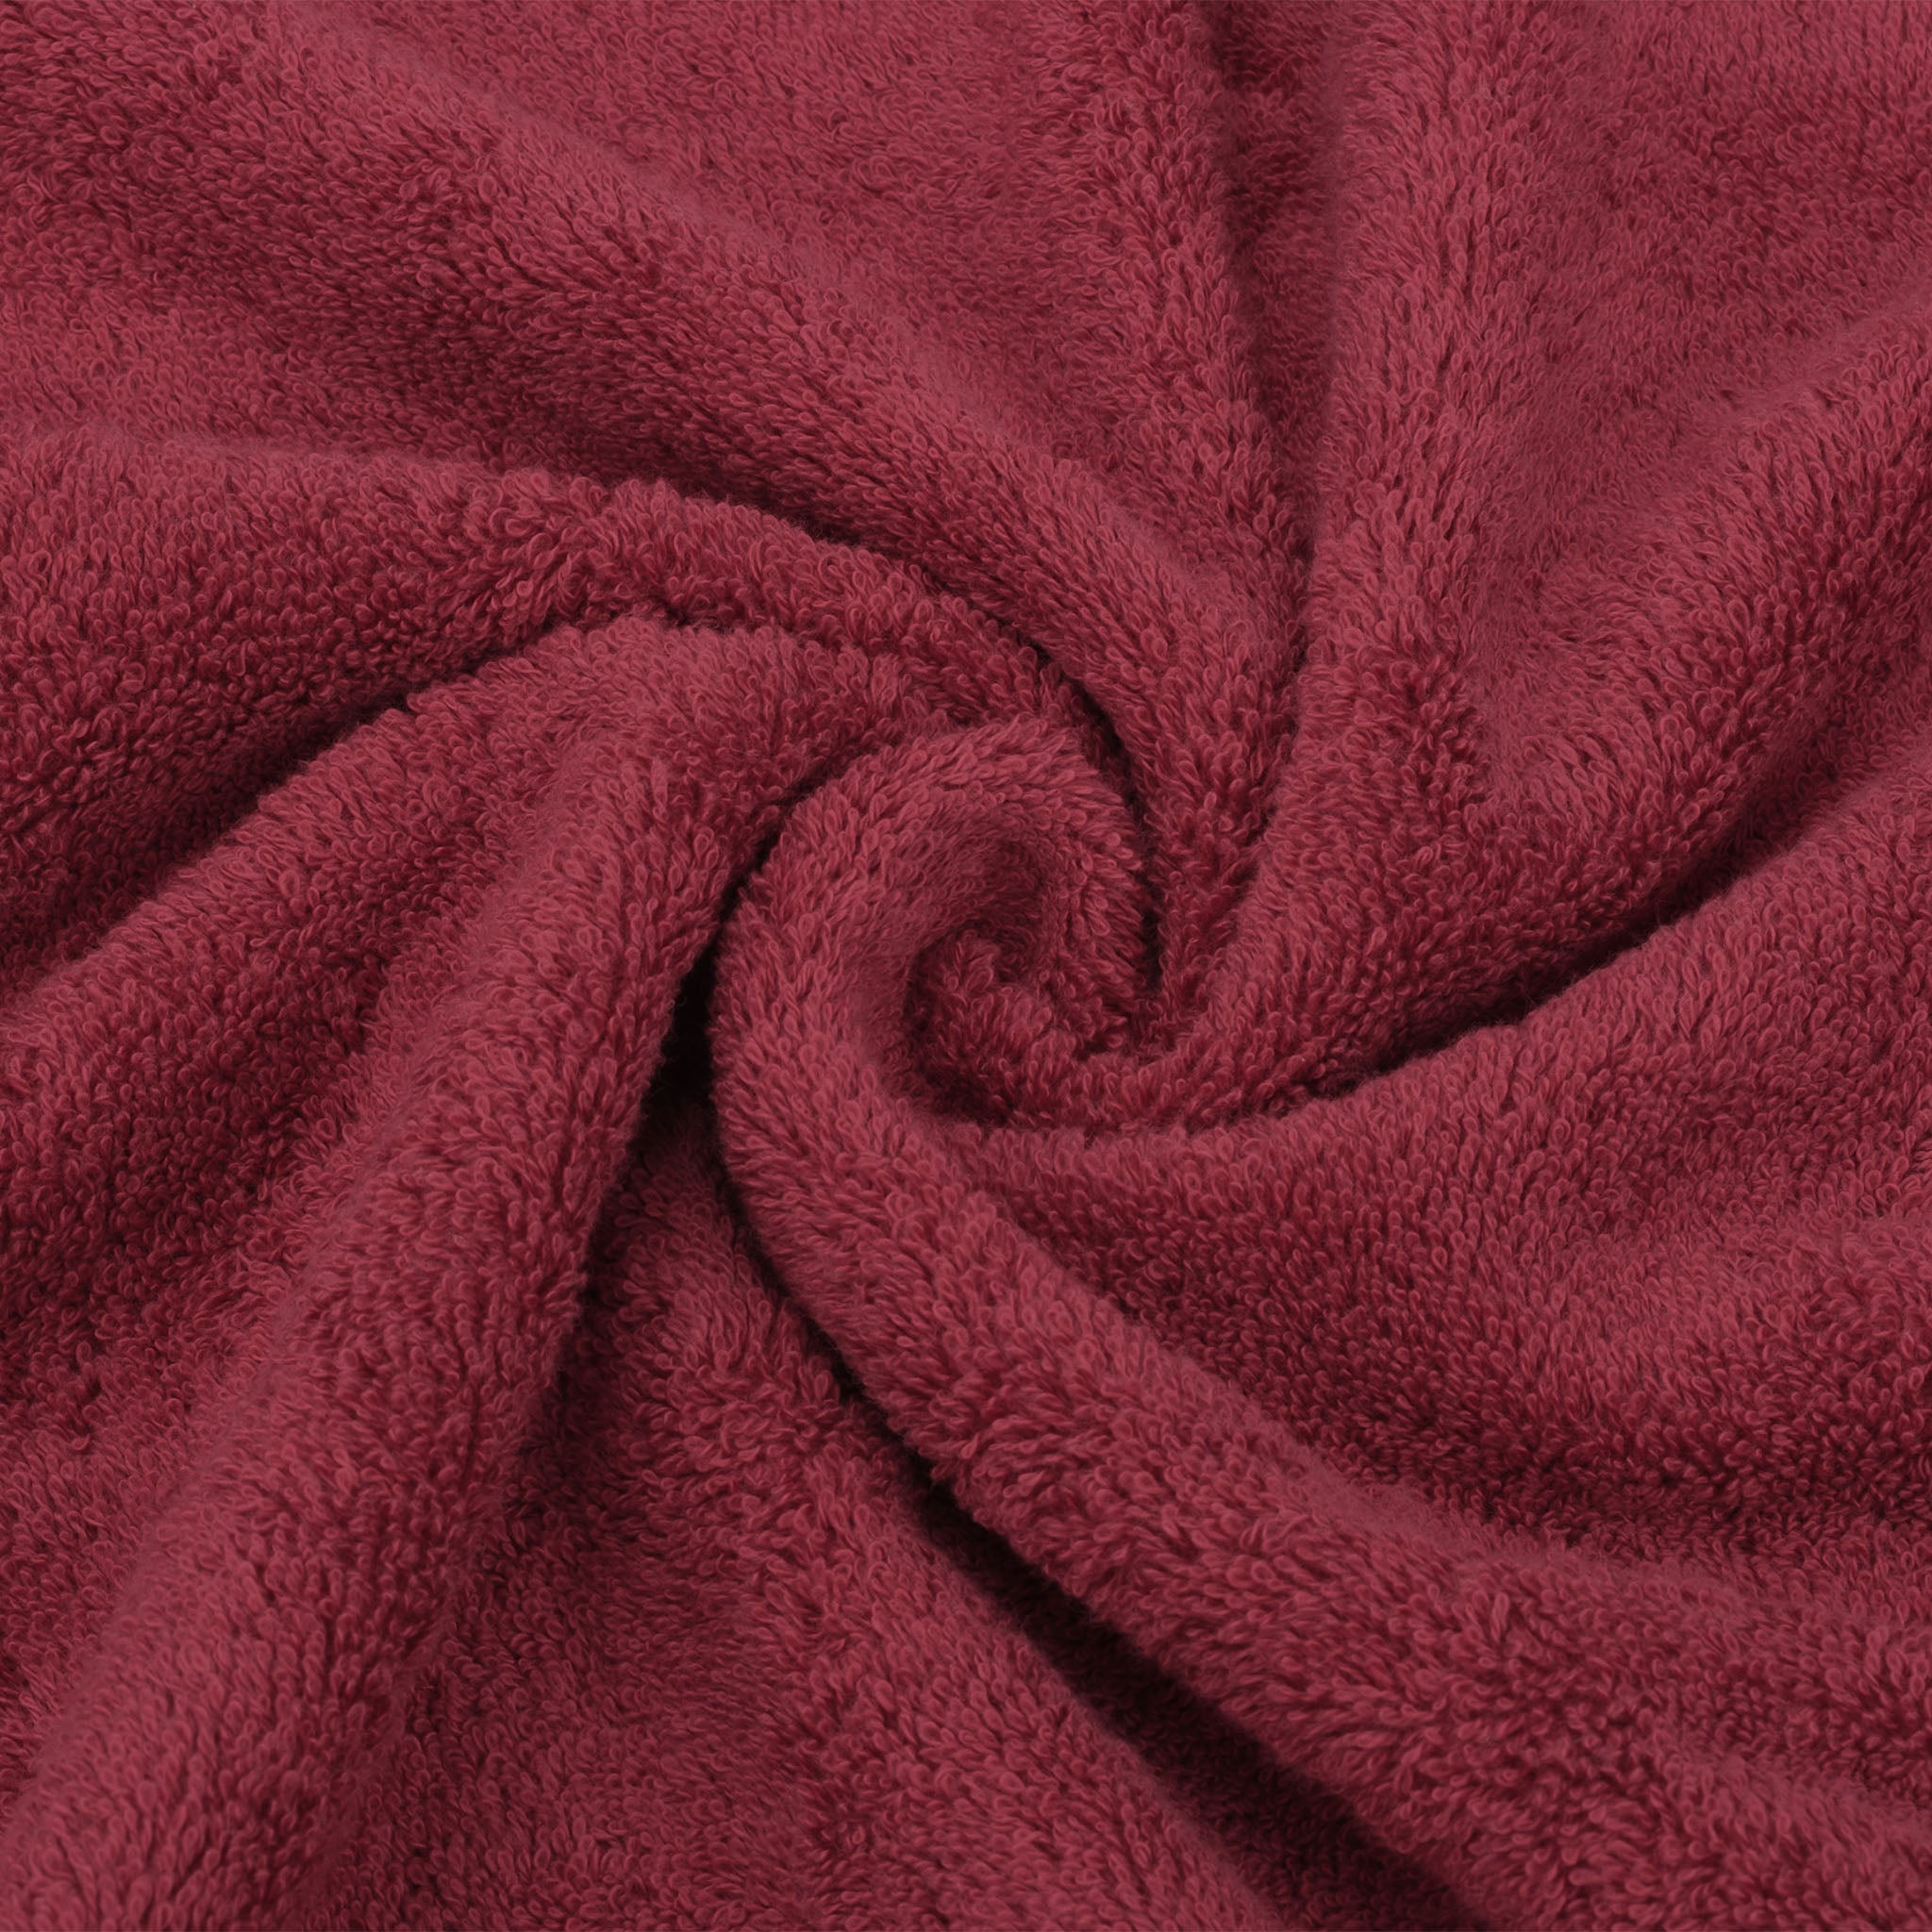 American Soft Linen 100% Turkish Cotton 6 Piece Towel Set Wholesale bordeaux-red-7